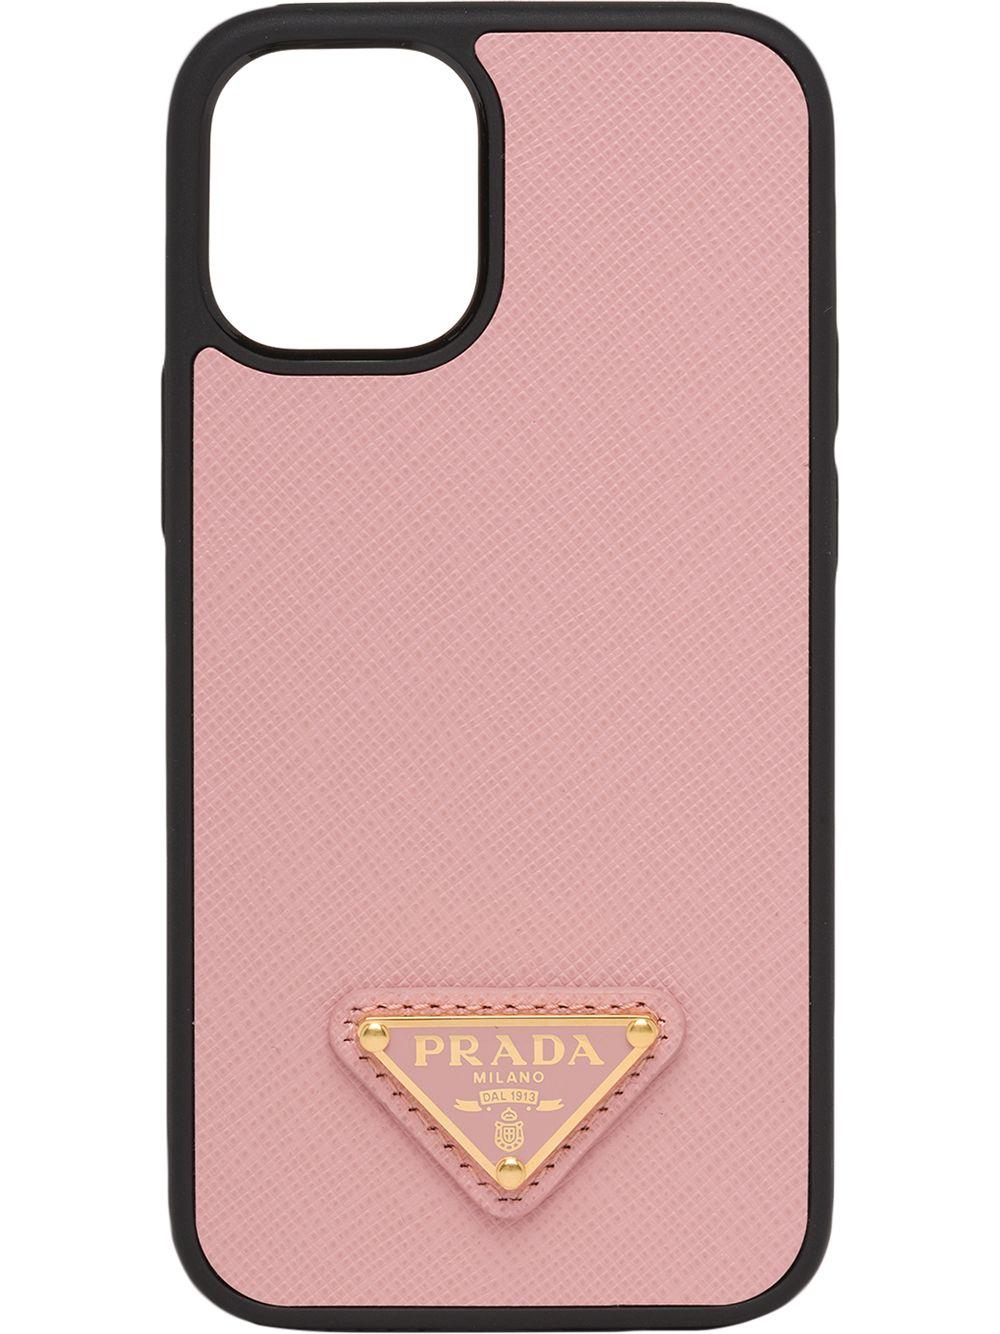 Milano Prada Coque Cover Case For Apple iPhone 15 Pro Max 14 13 12 /3